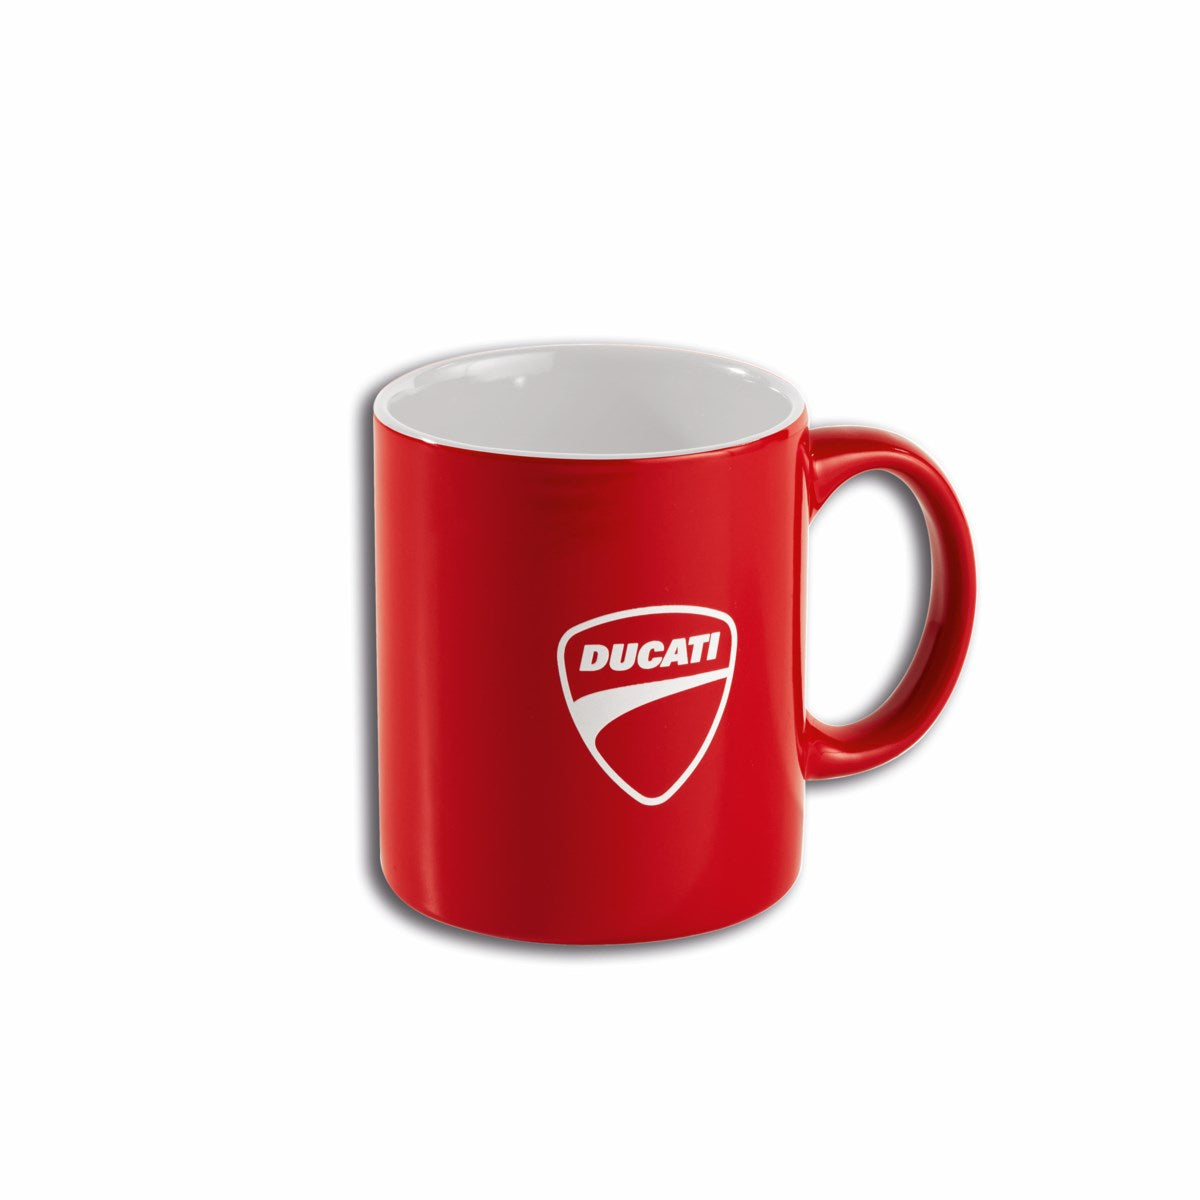 Ducati Red Mug